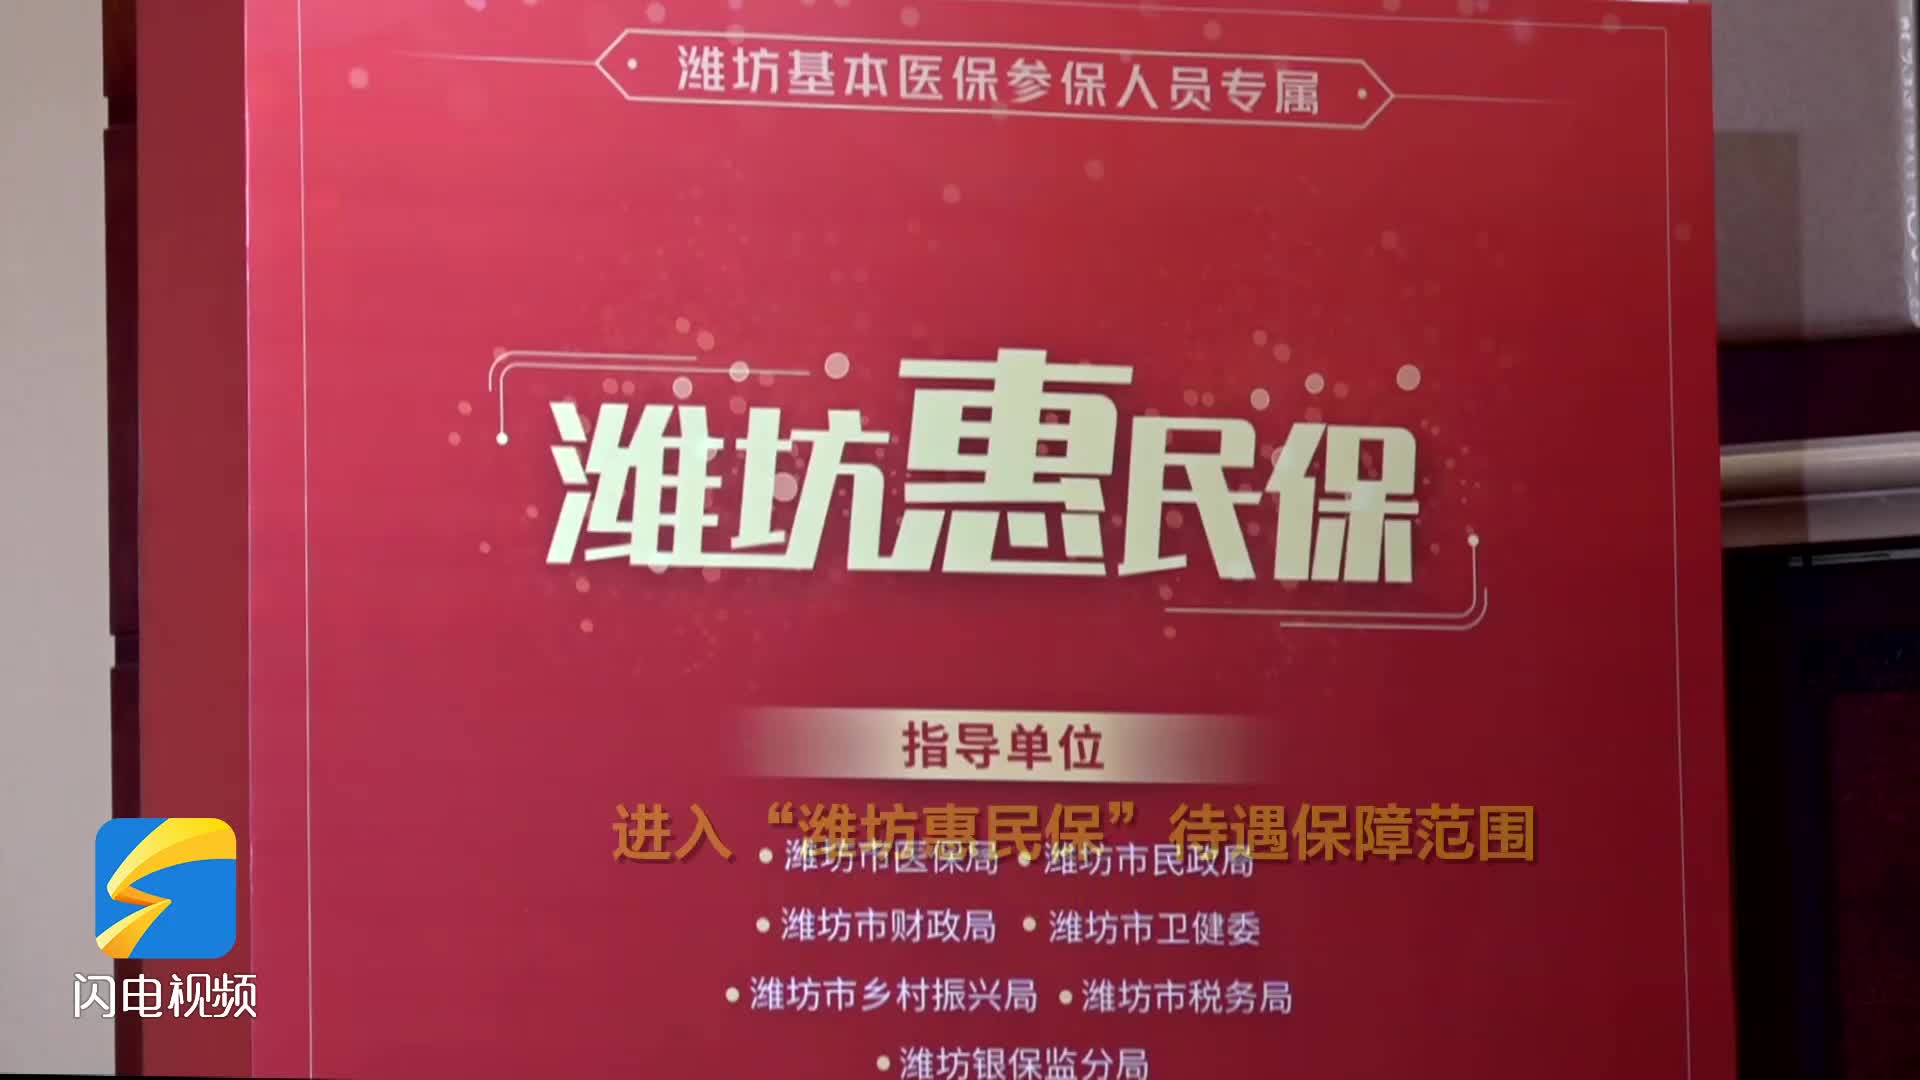 “潍坊惠民保”正式上线发布 每人每年149元 投保截至10月31日